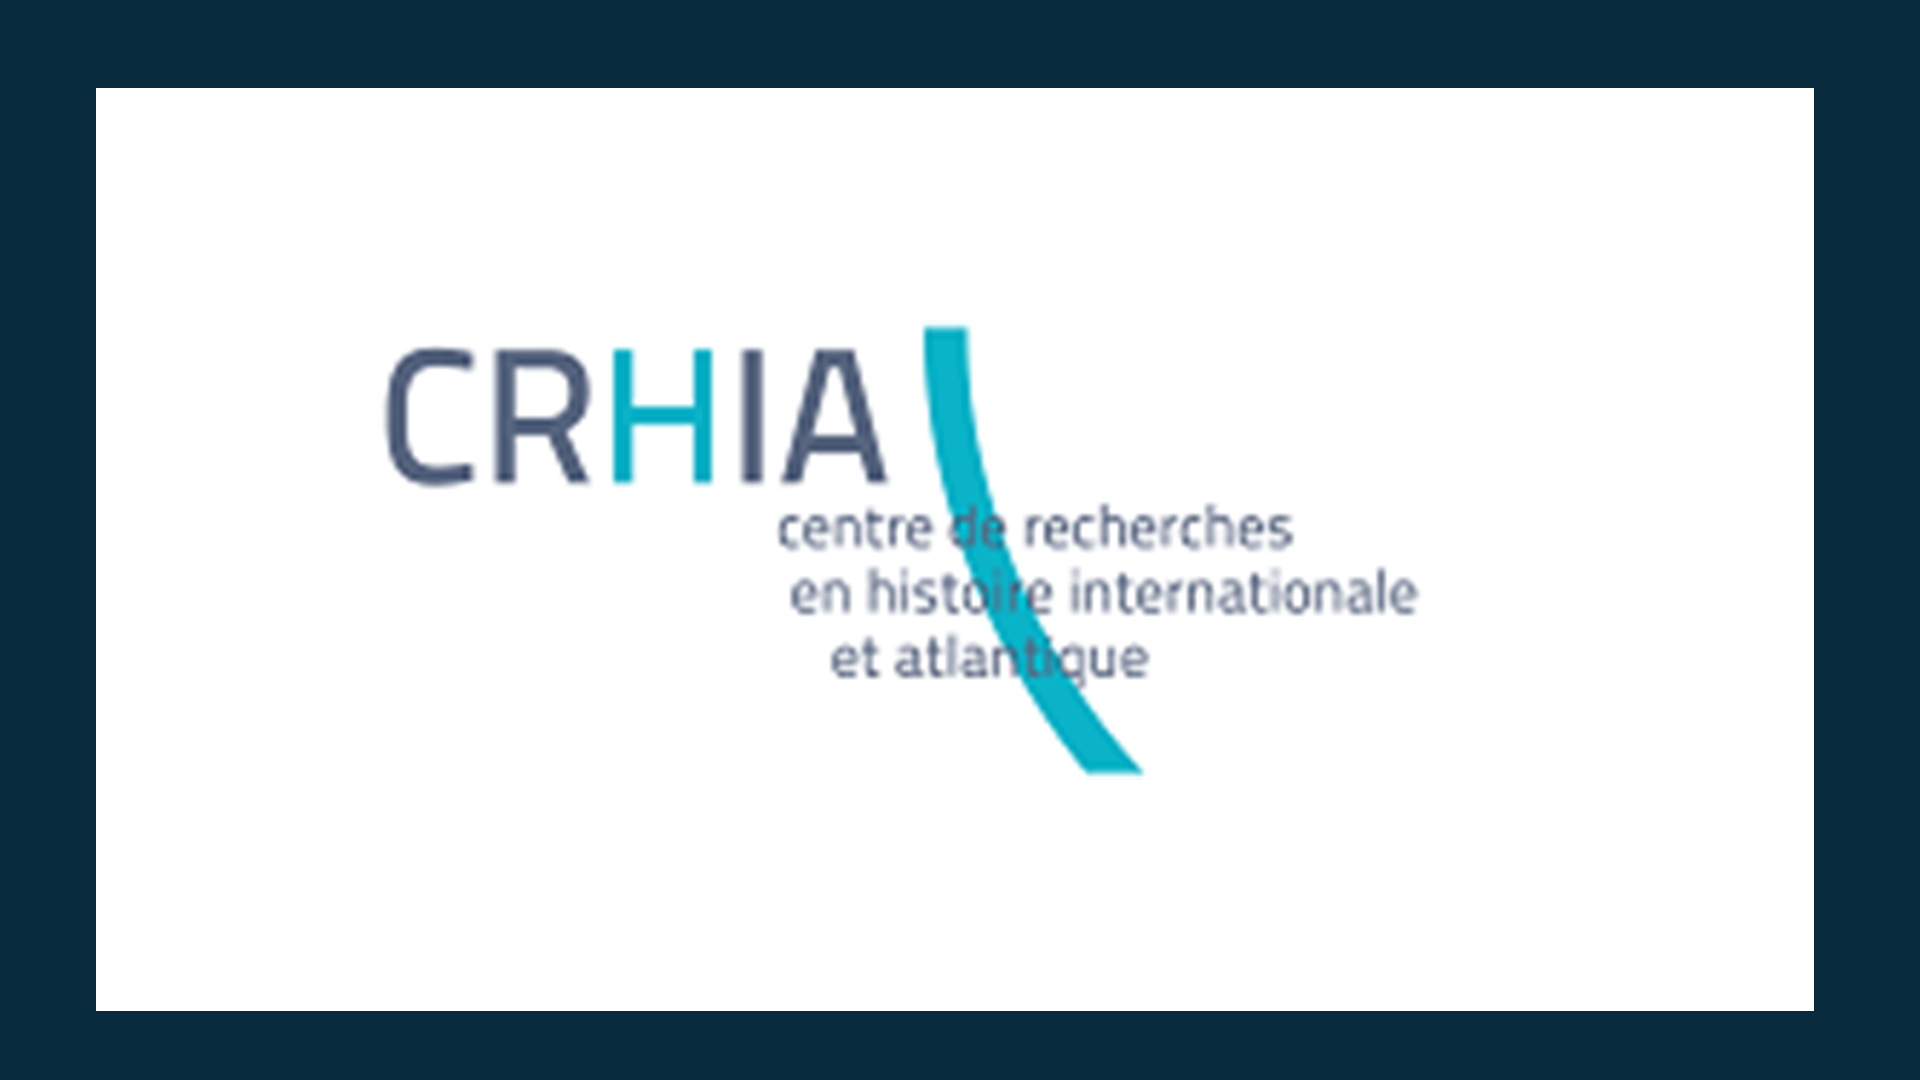 Logo CRHIA